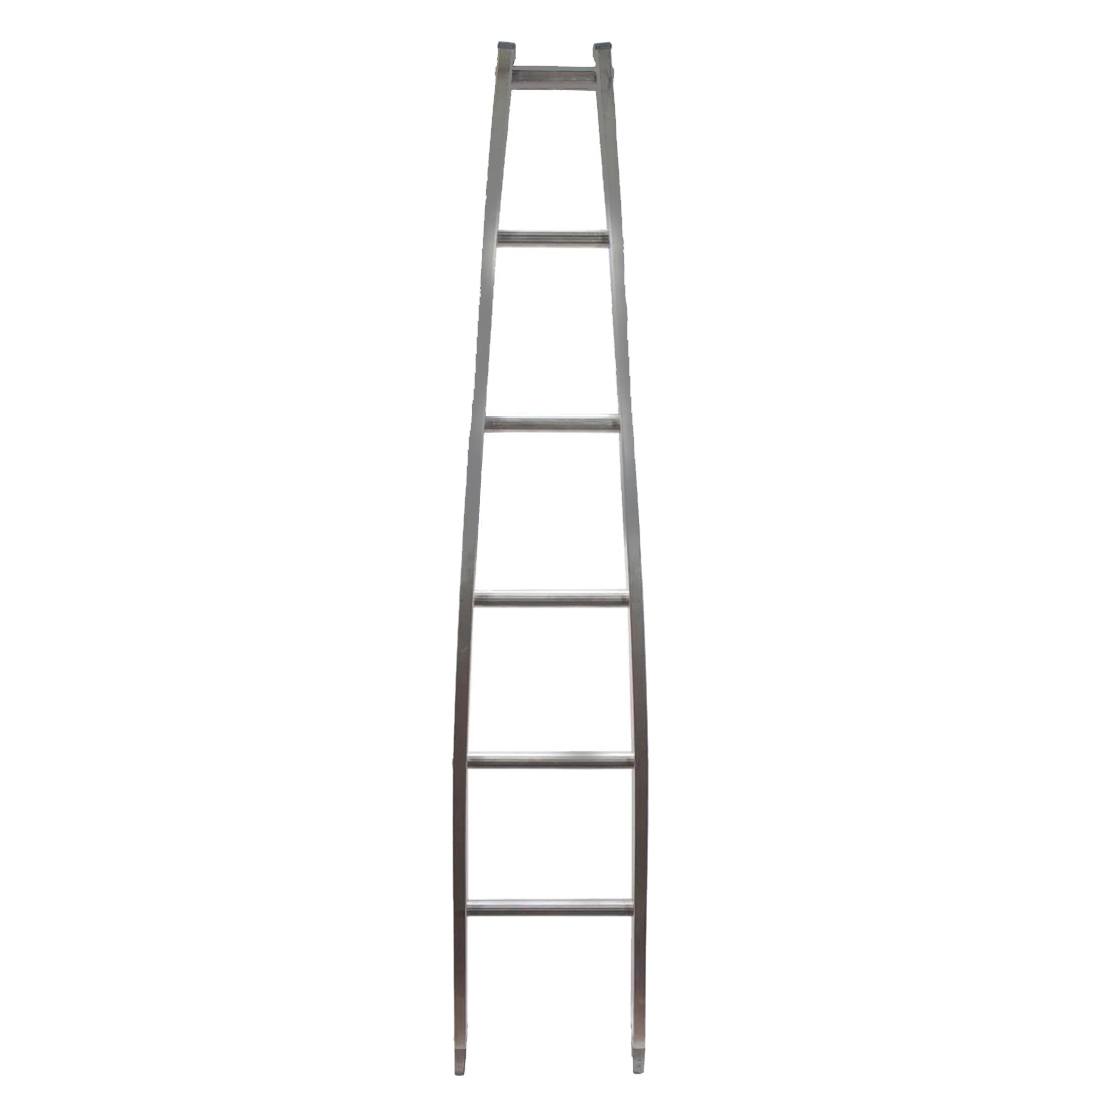 Metallic Ladder Aluminum Open Top Section - 6 Foot Main View